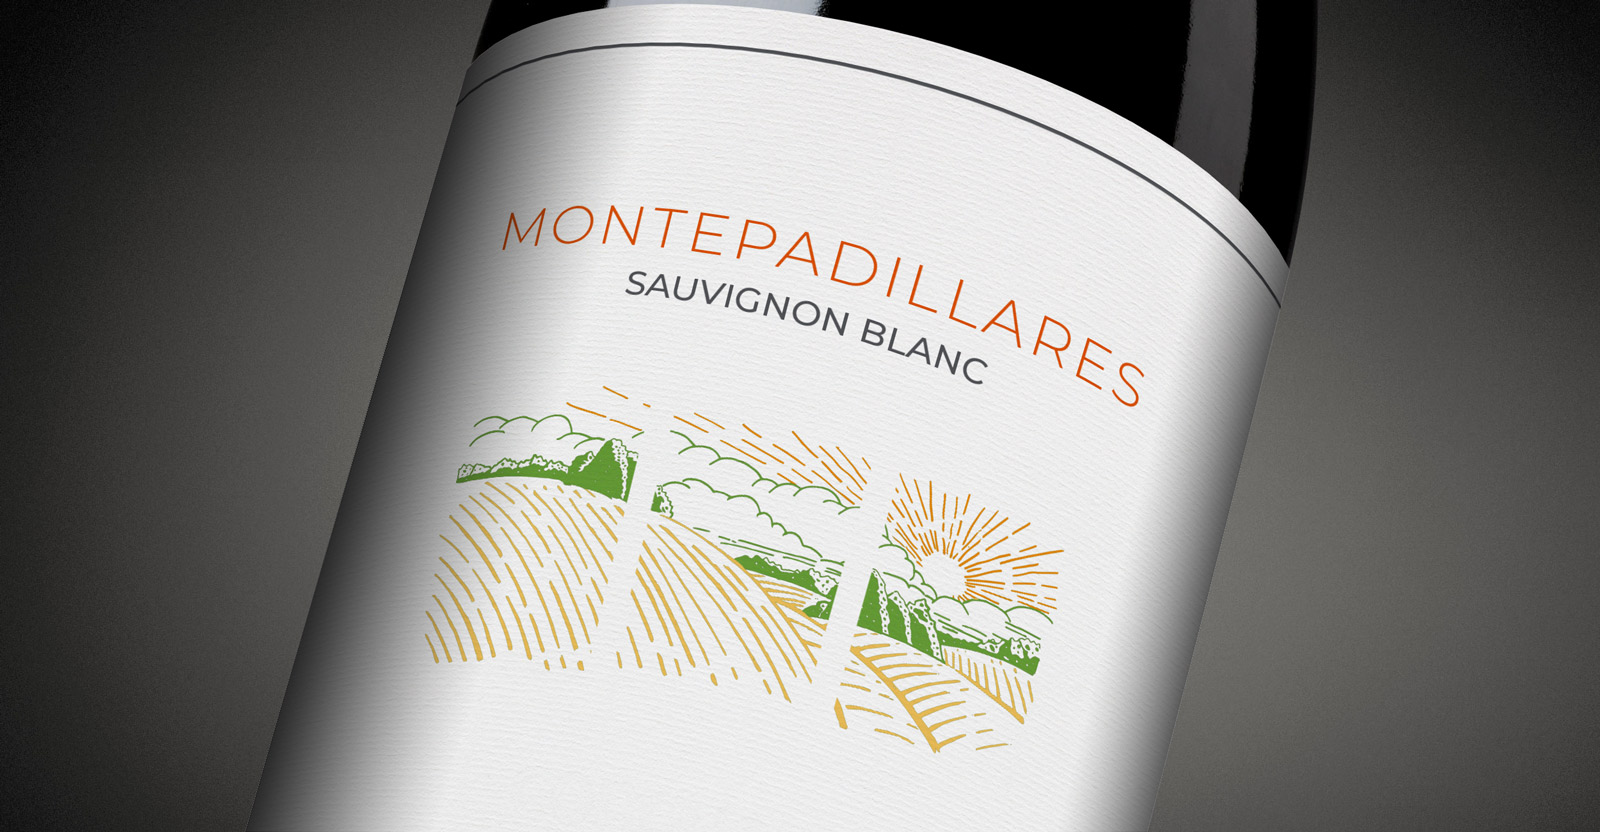 Diseño gráfico y creativo de etiquetas de vino y packaging de vino para MONTEPADILLARES